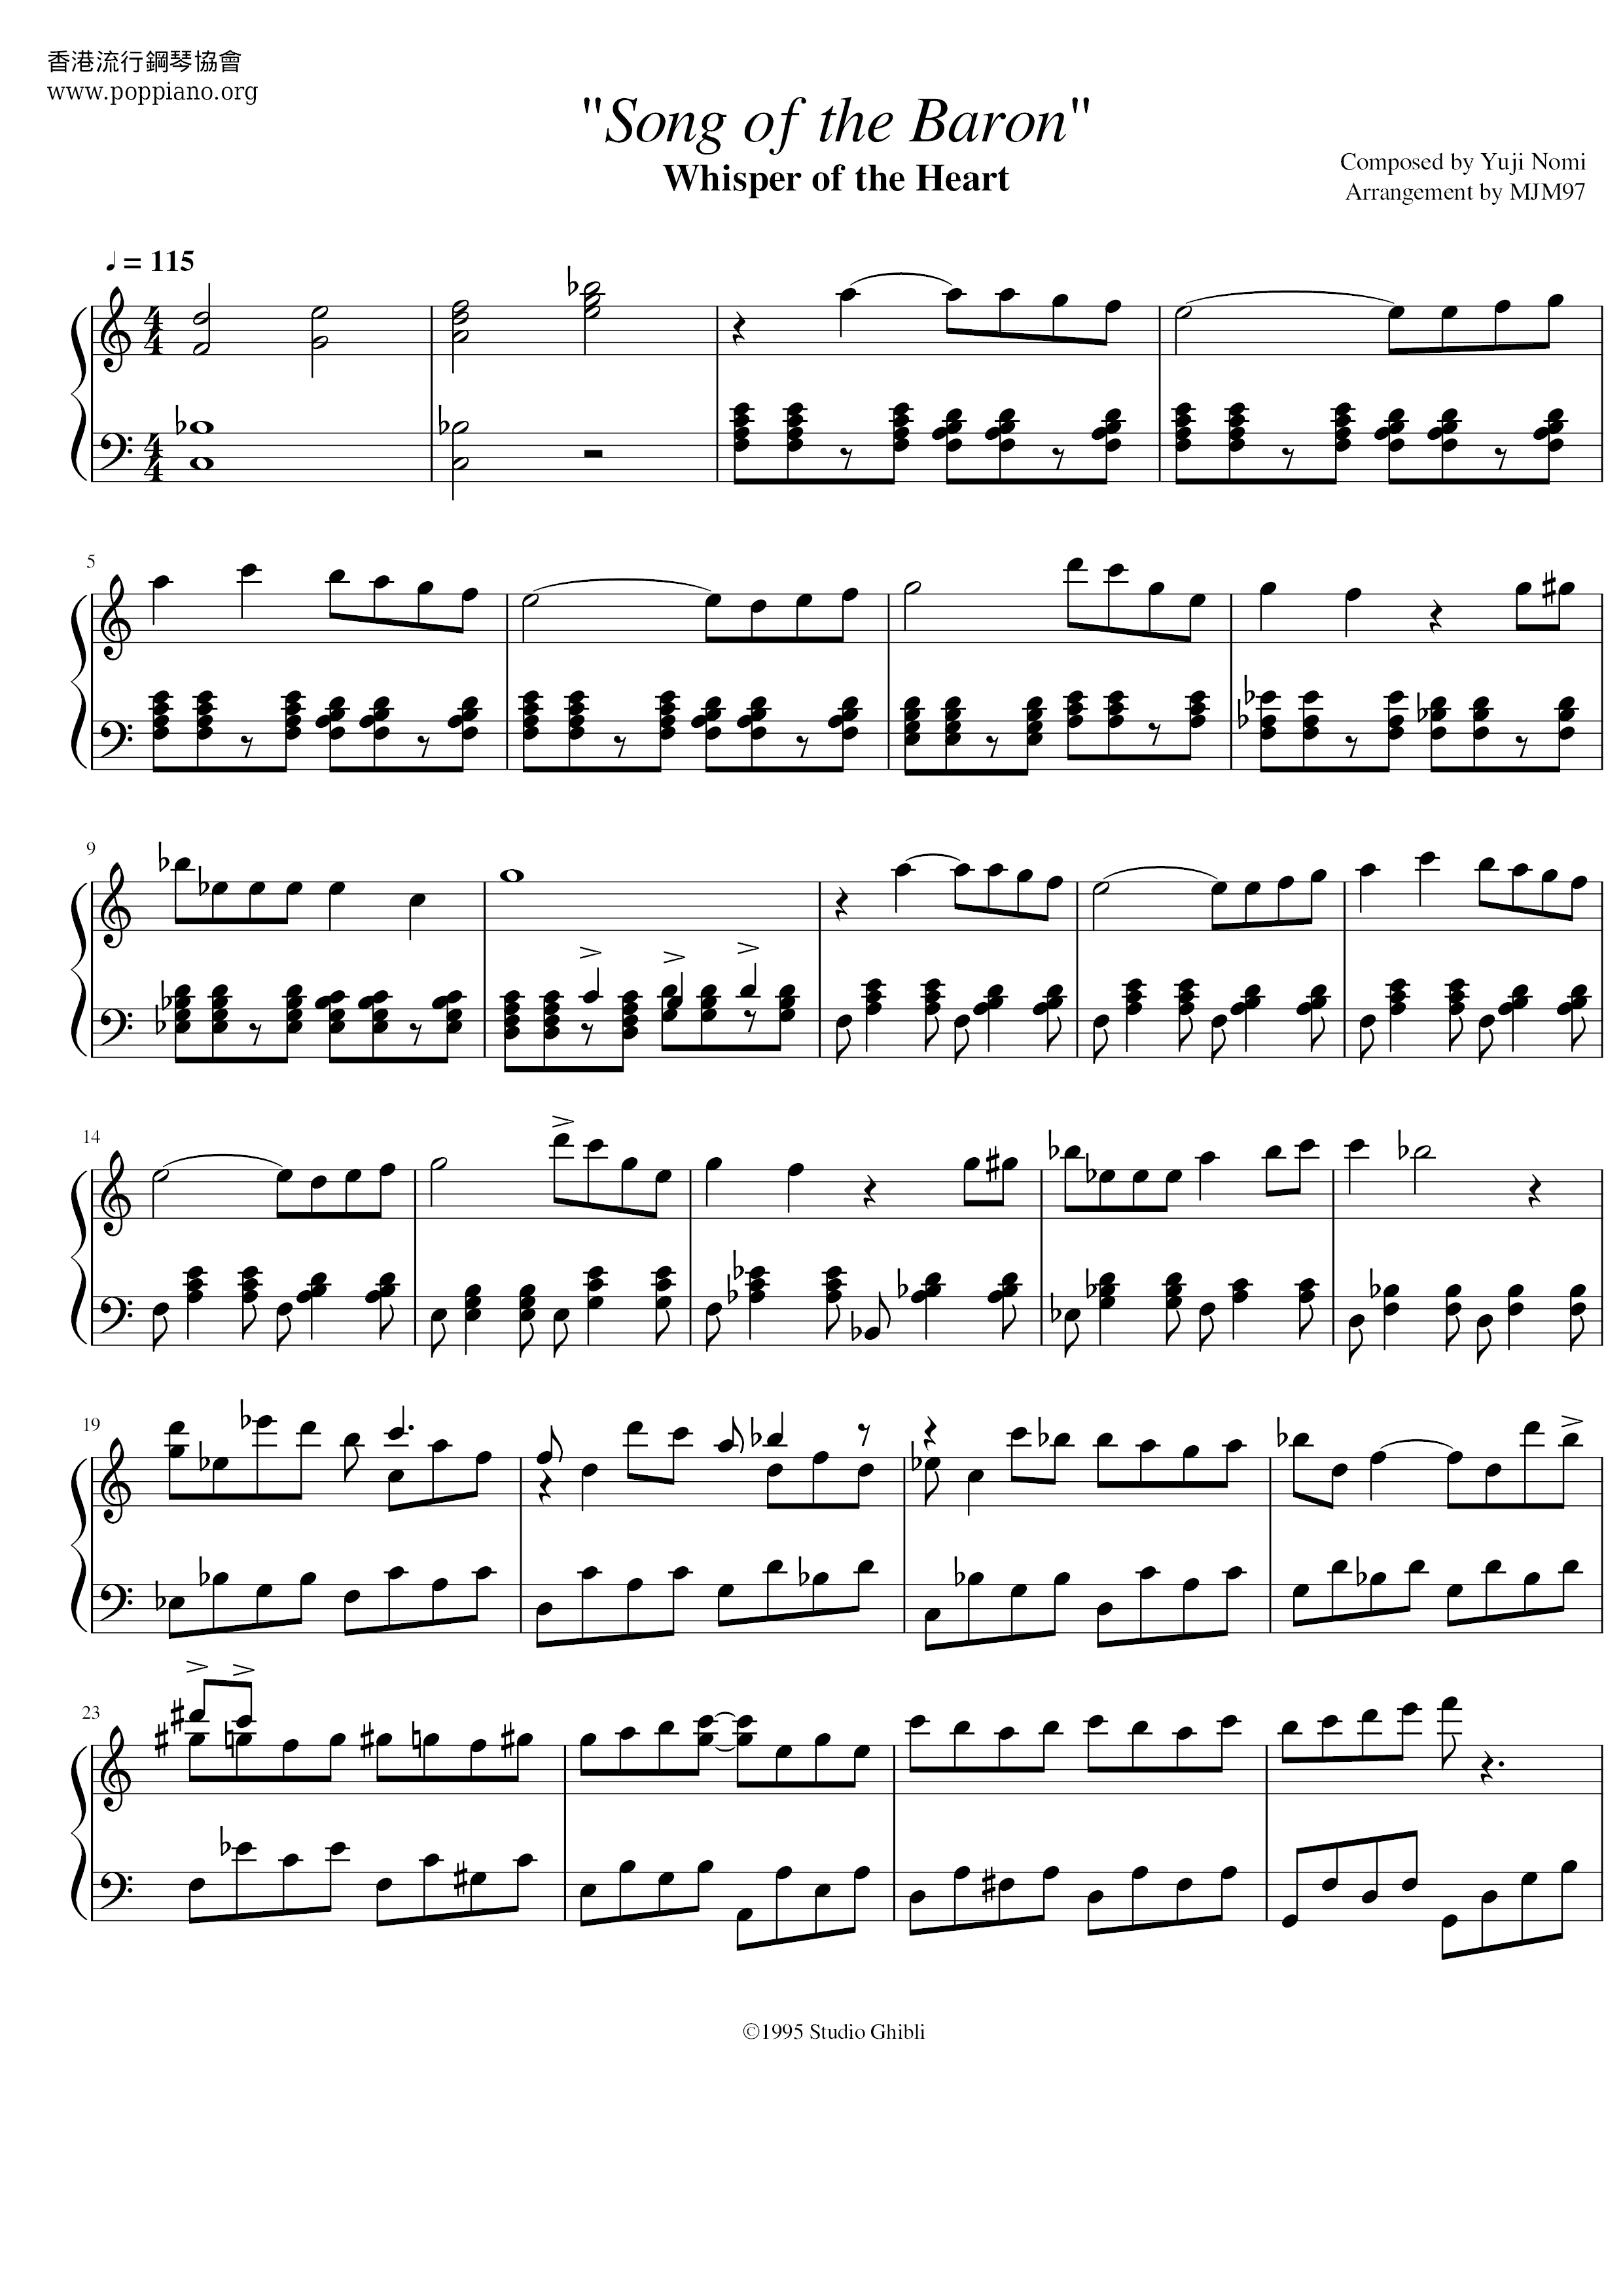 ☆Yuji Nomi - Song Of The Baron ピアノ譜pdf- 香港ポップピアノ協会 